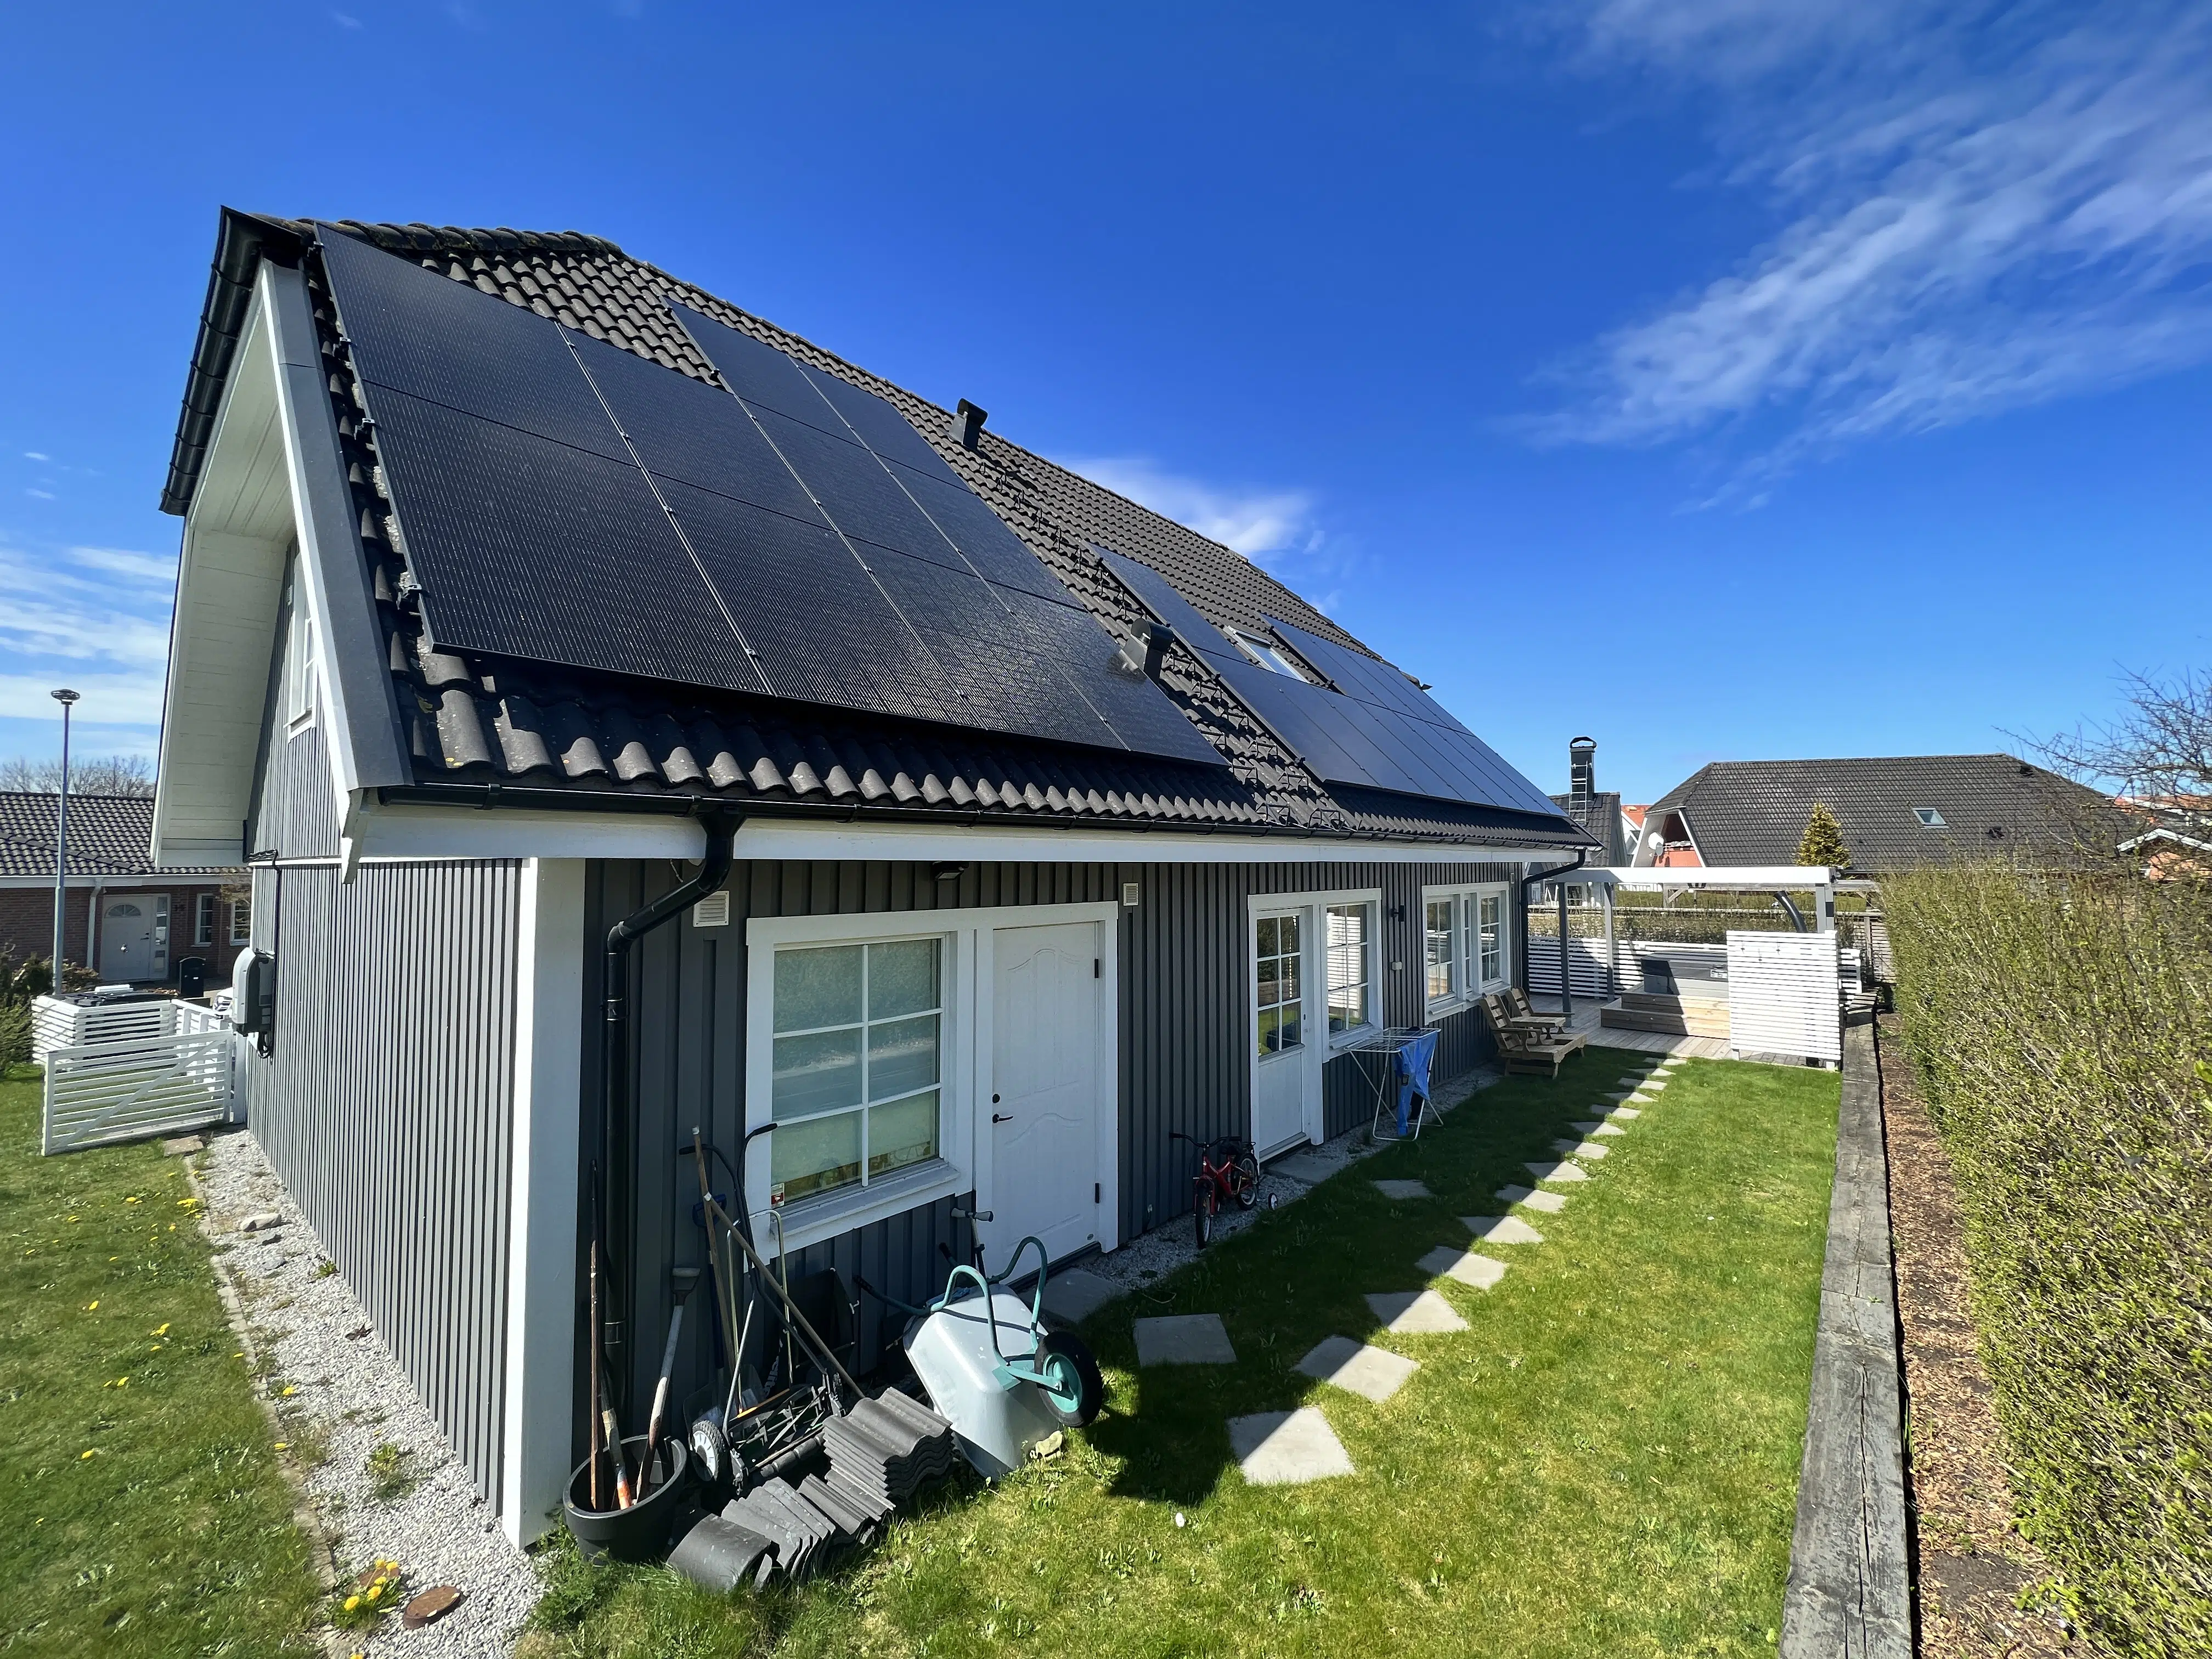 Här har vi på Solceller Syd monterat solcellspaneler till en privatperson i Svedala Skåne